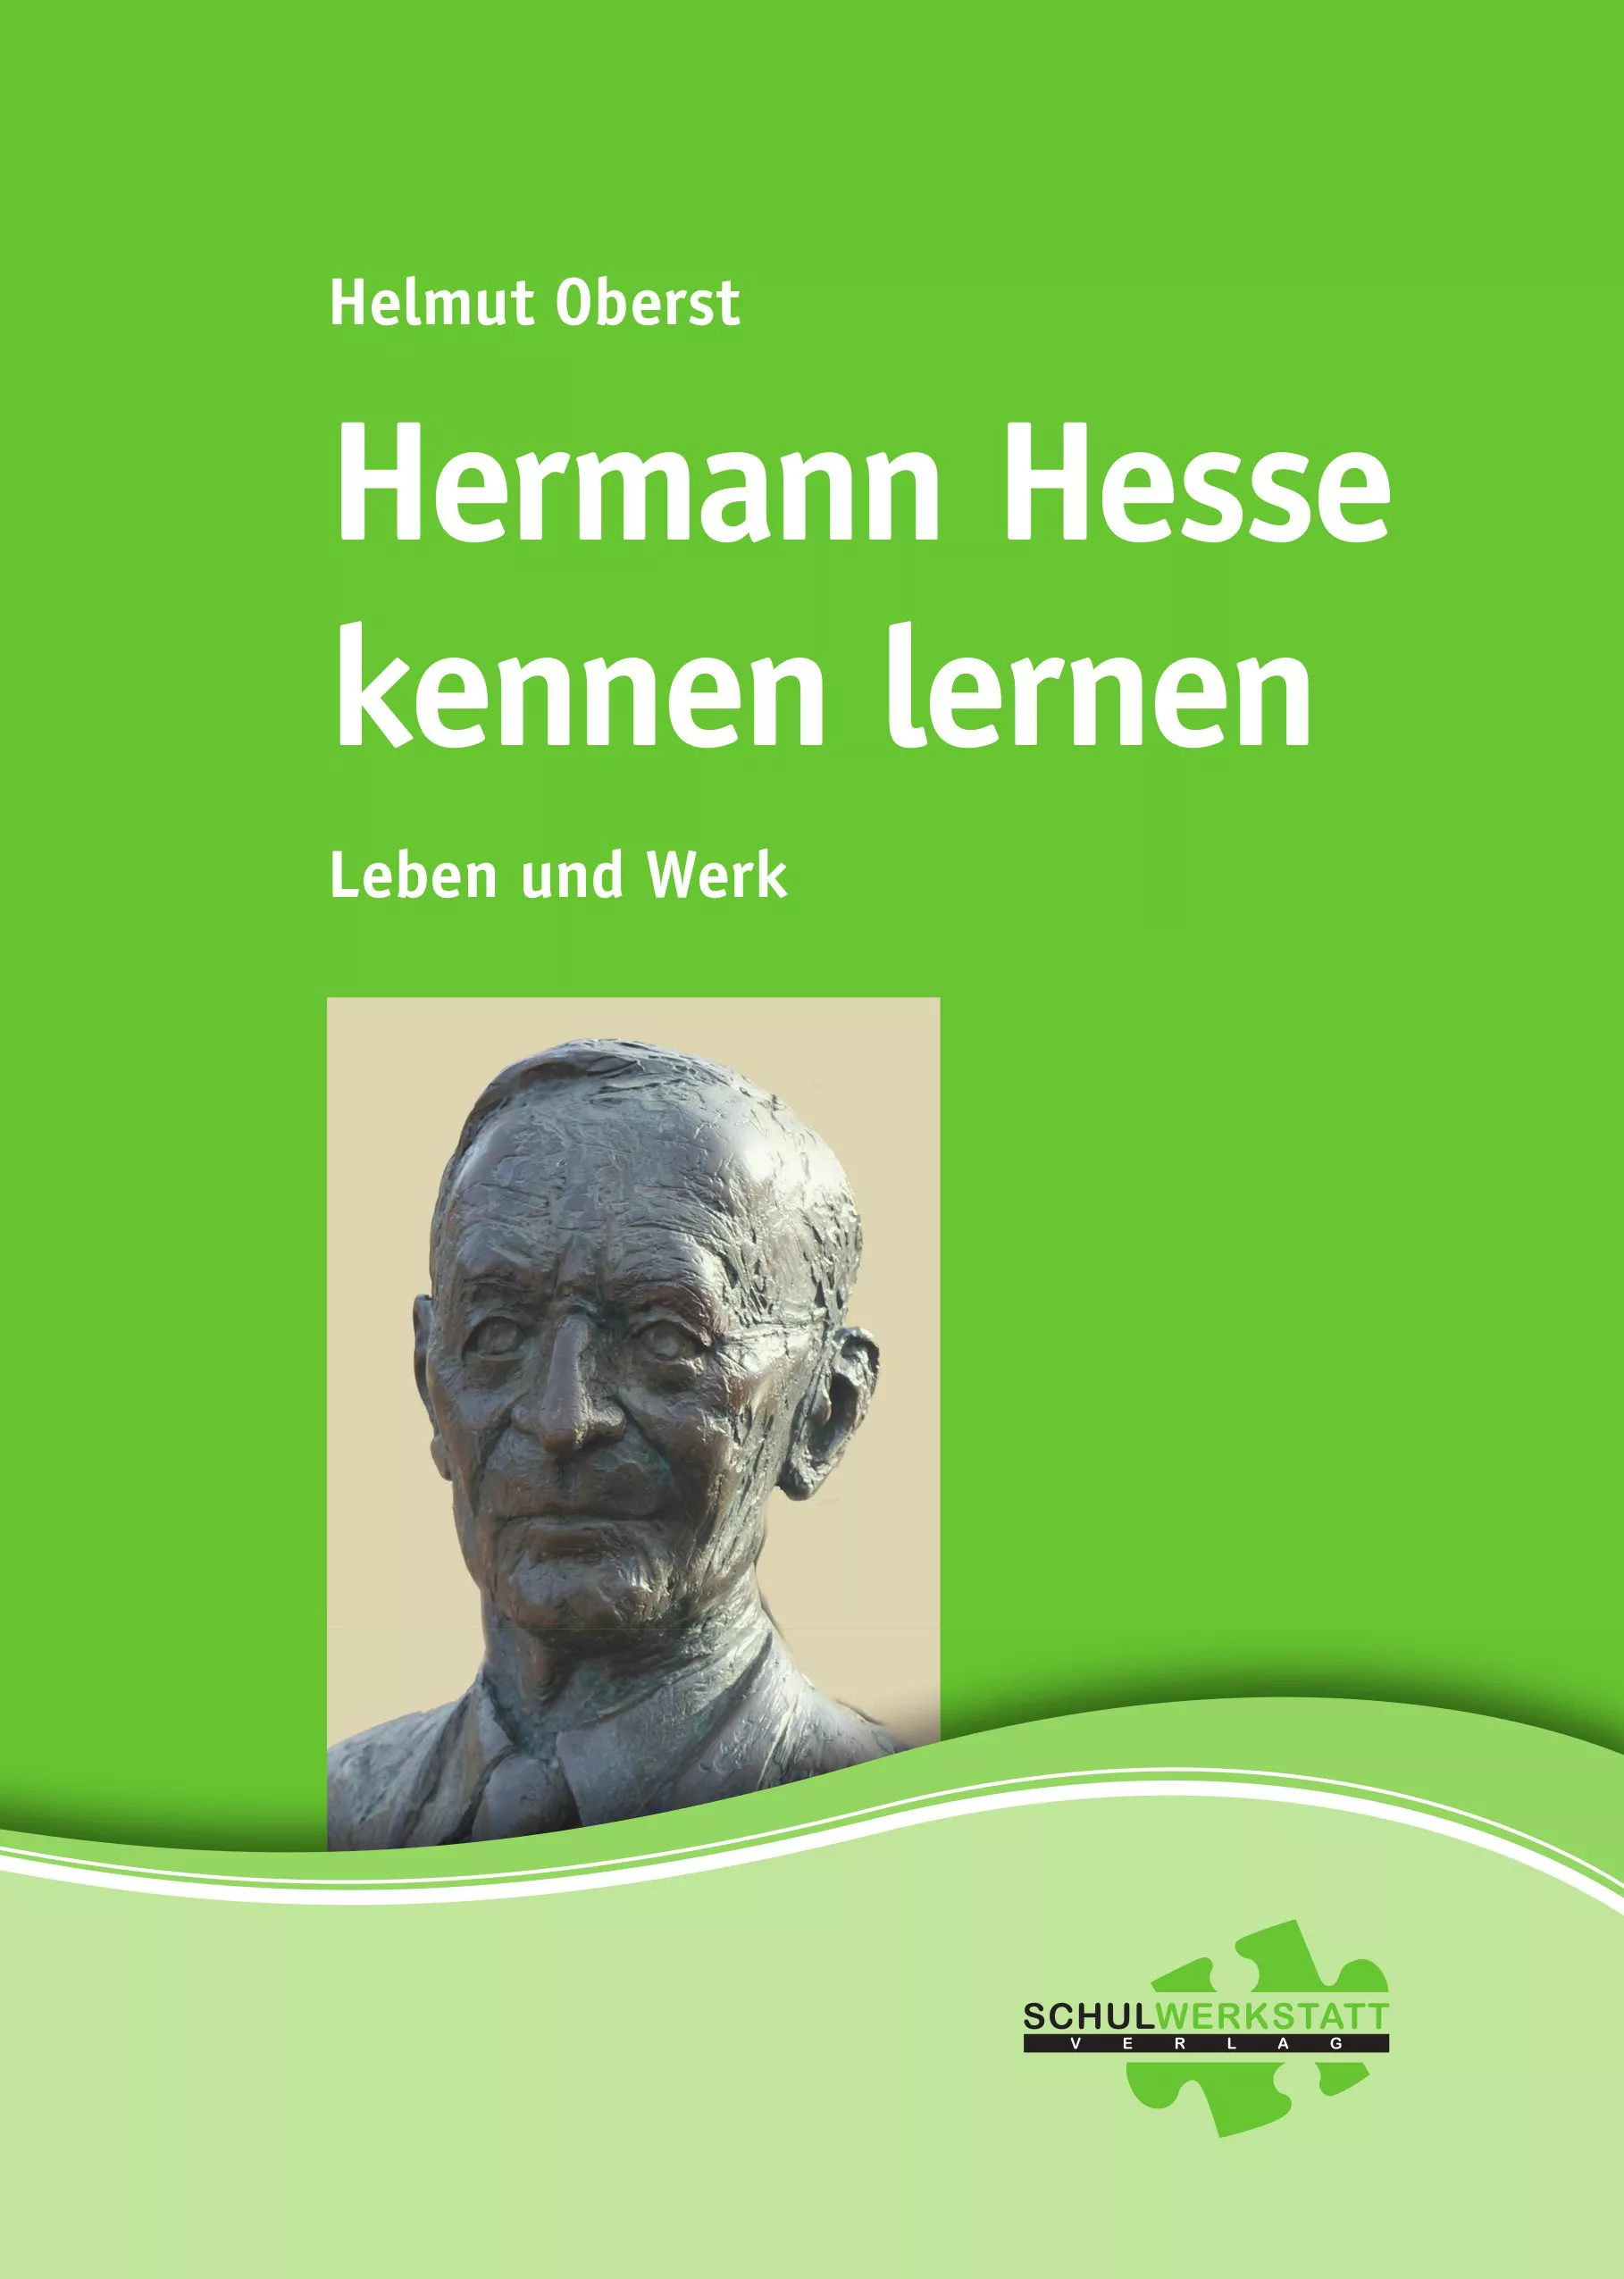 Hermann Hesse kennen lernen